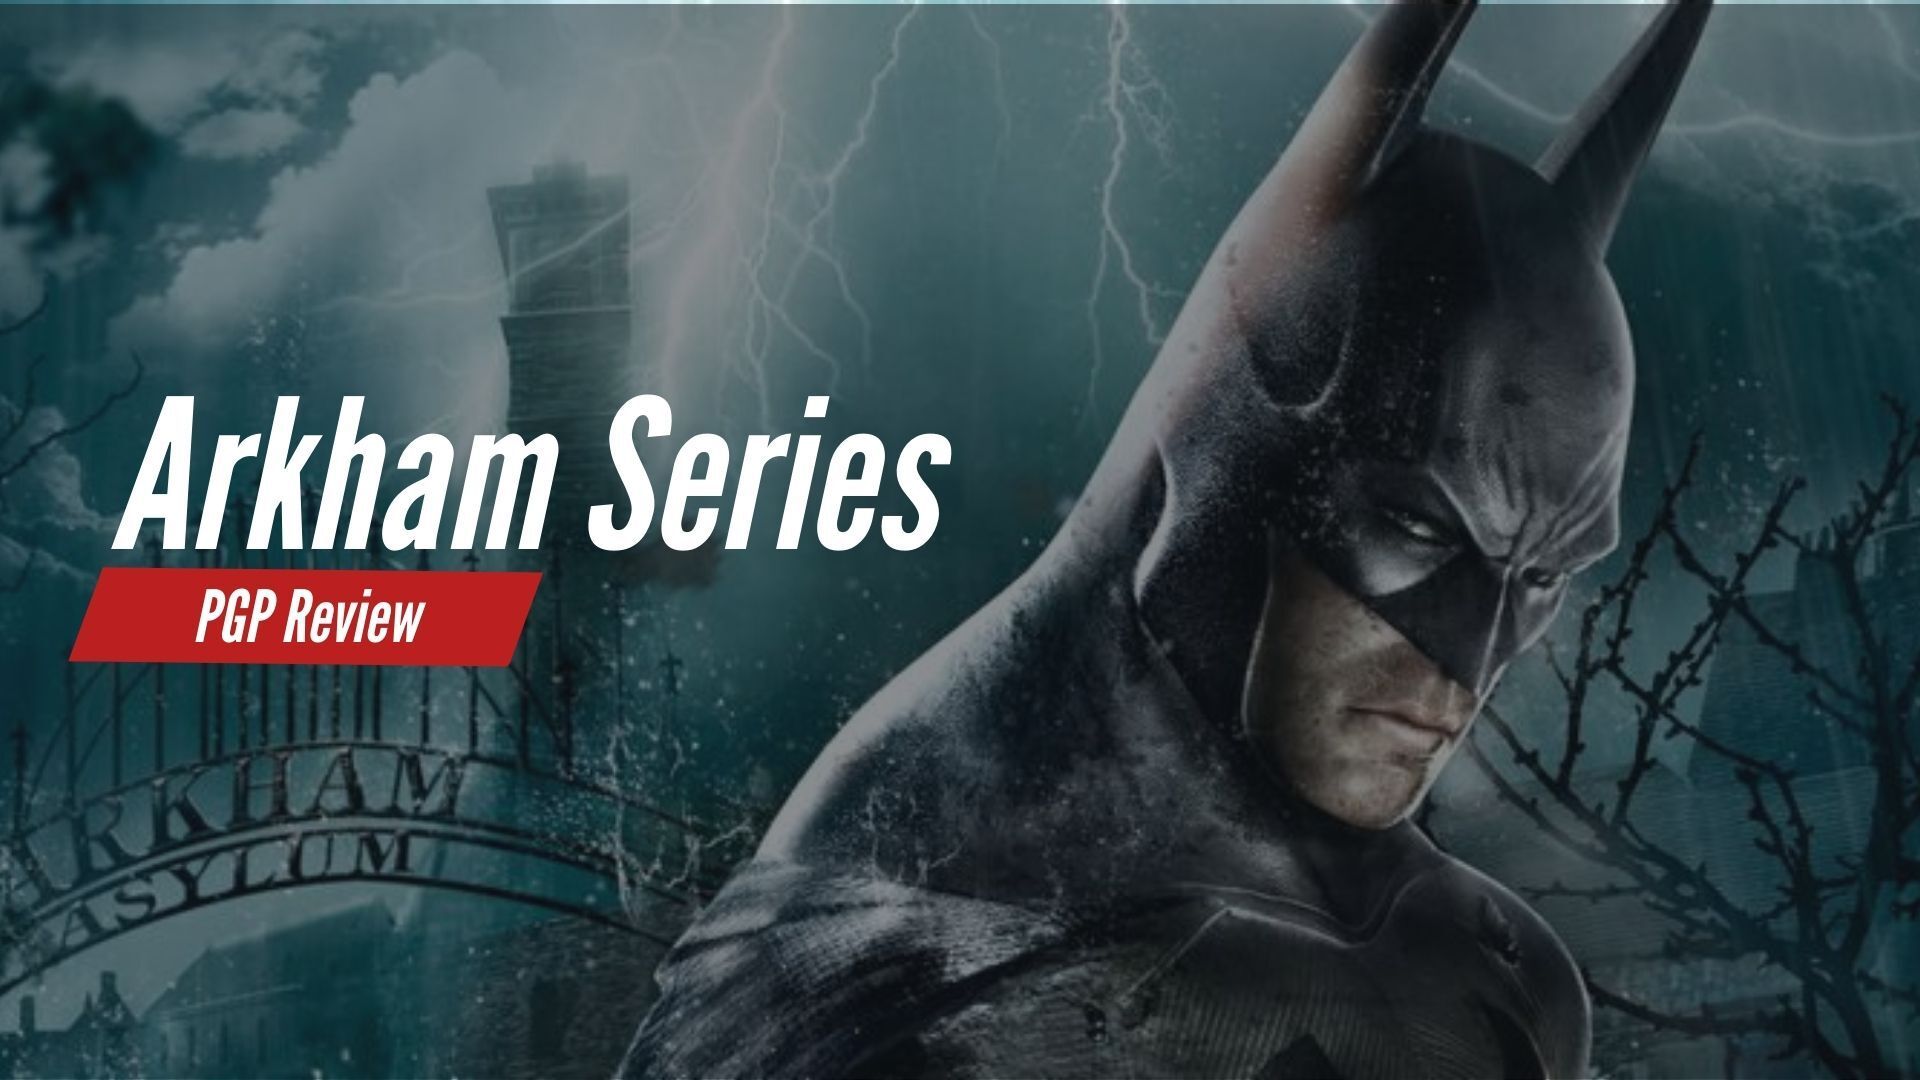 Review: Batman: Arkham Asylum